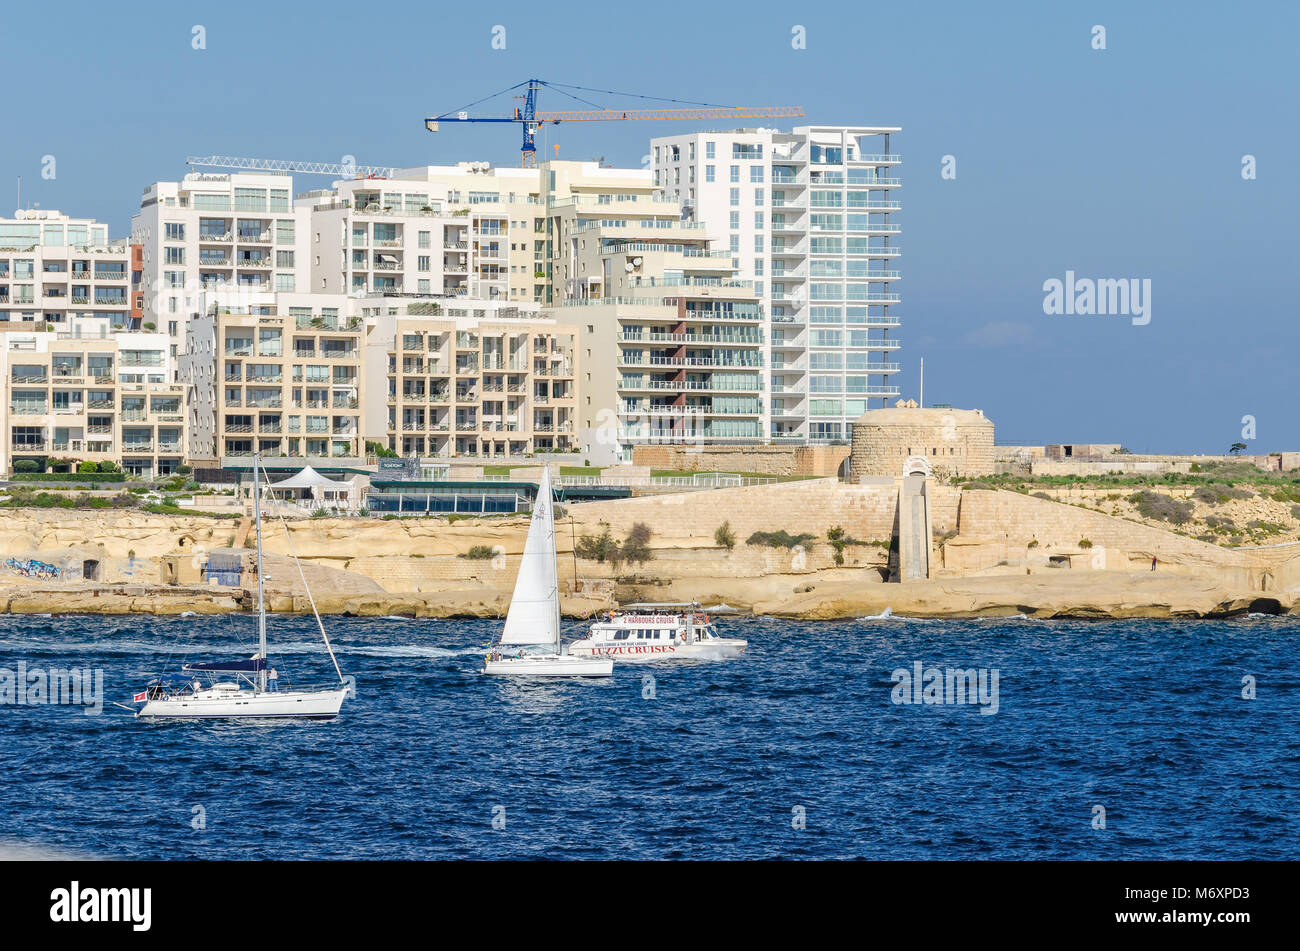 Valletta, Malta - 8. November 2015: Bau von modernen Gebäuden in der Nähe der alten Befestigungsanlagen des Ordens des Heiligen Johannes an der Draguts Punkt in der Ar Stockfoto